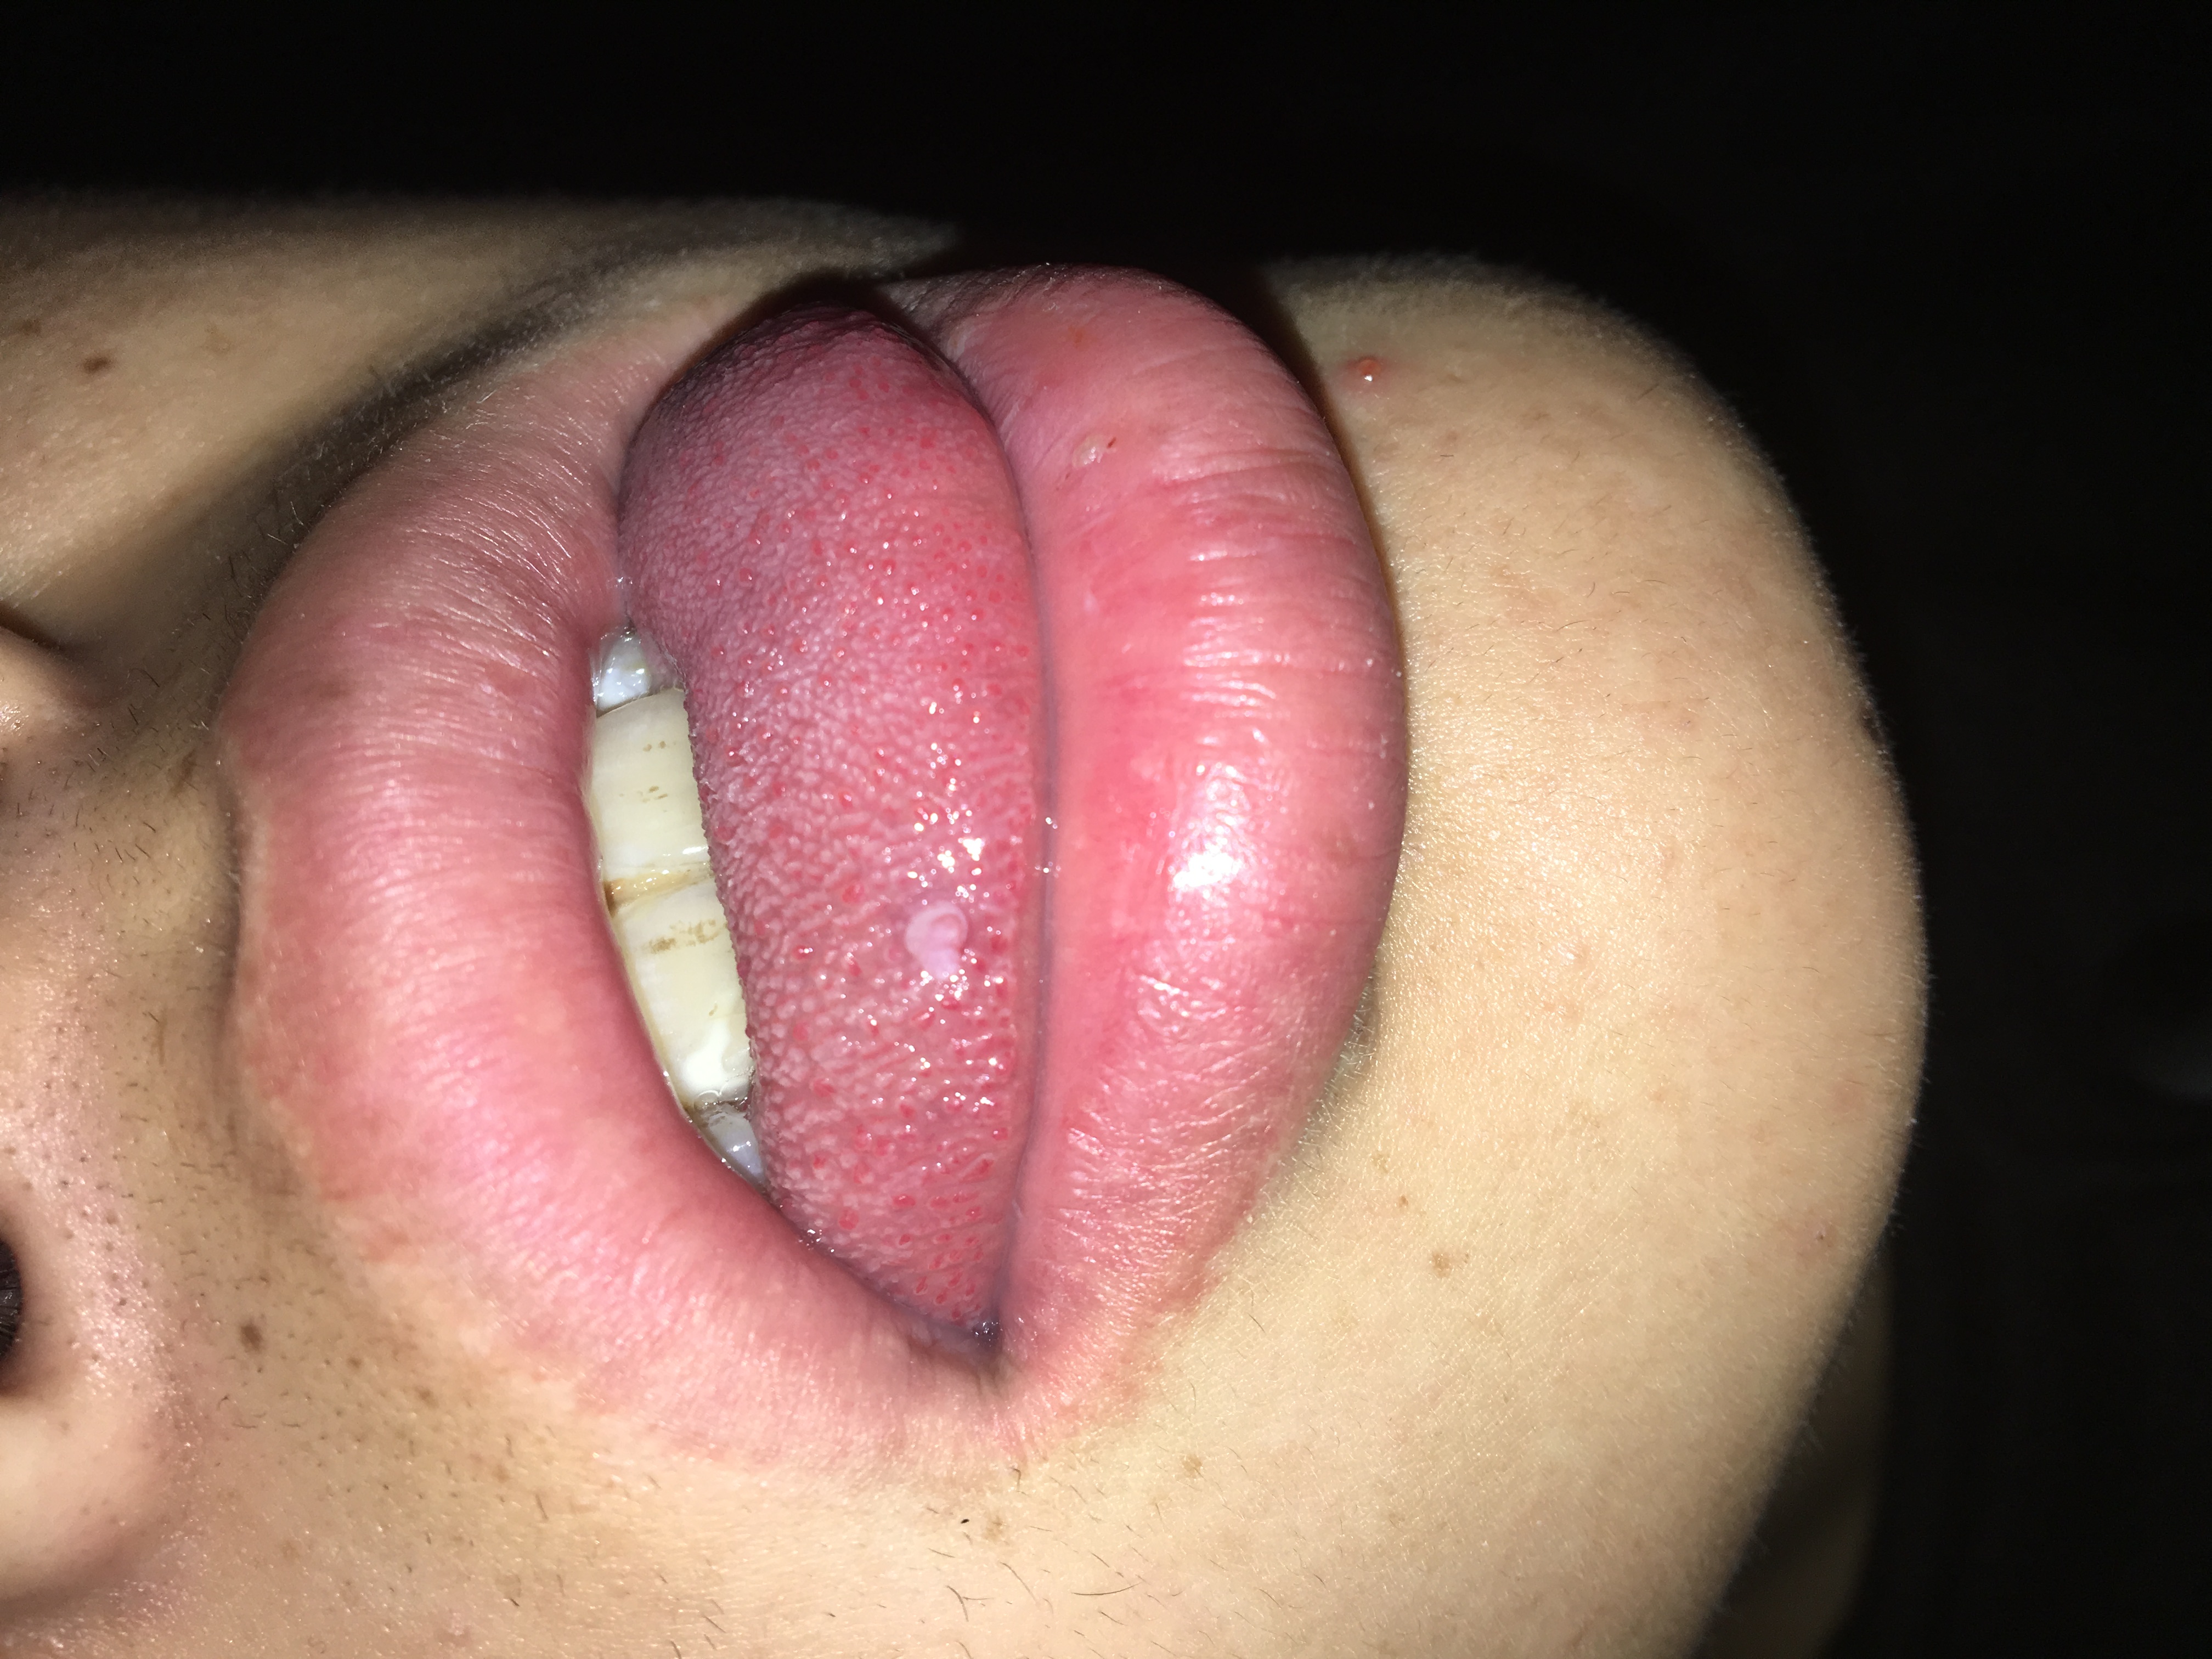 舌纤维瘤图片图片